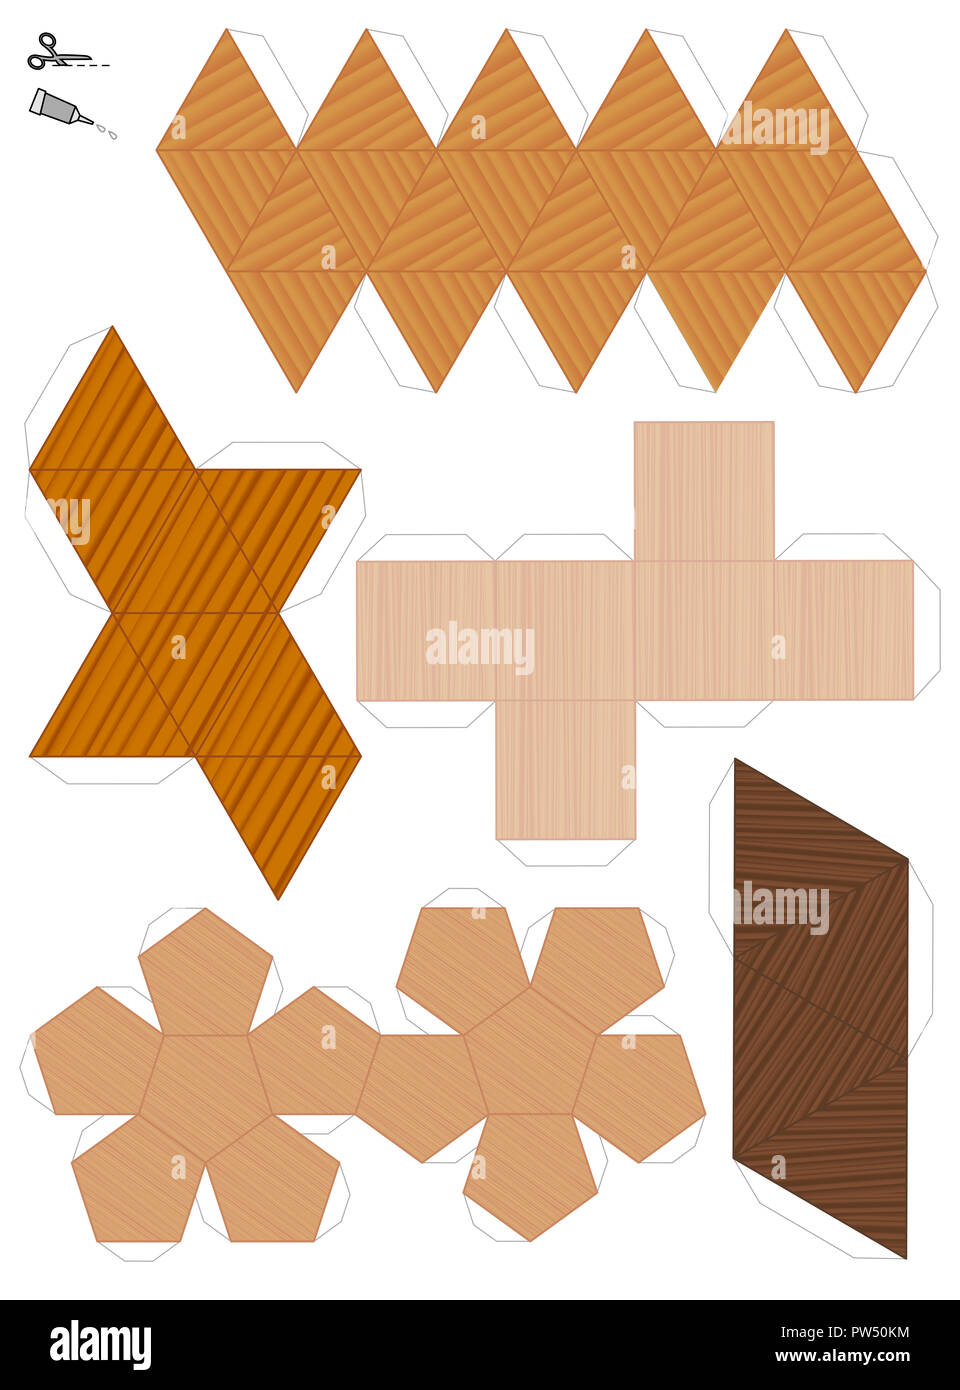 Papier Modelle der fünf platonischen Körper. Holz- strukturierte Vorlagen ausschneiden und fünf geometrische Figuren machen. Sample Set mit verschiedenen Texturen. Stockfoto